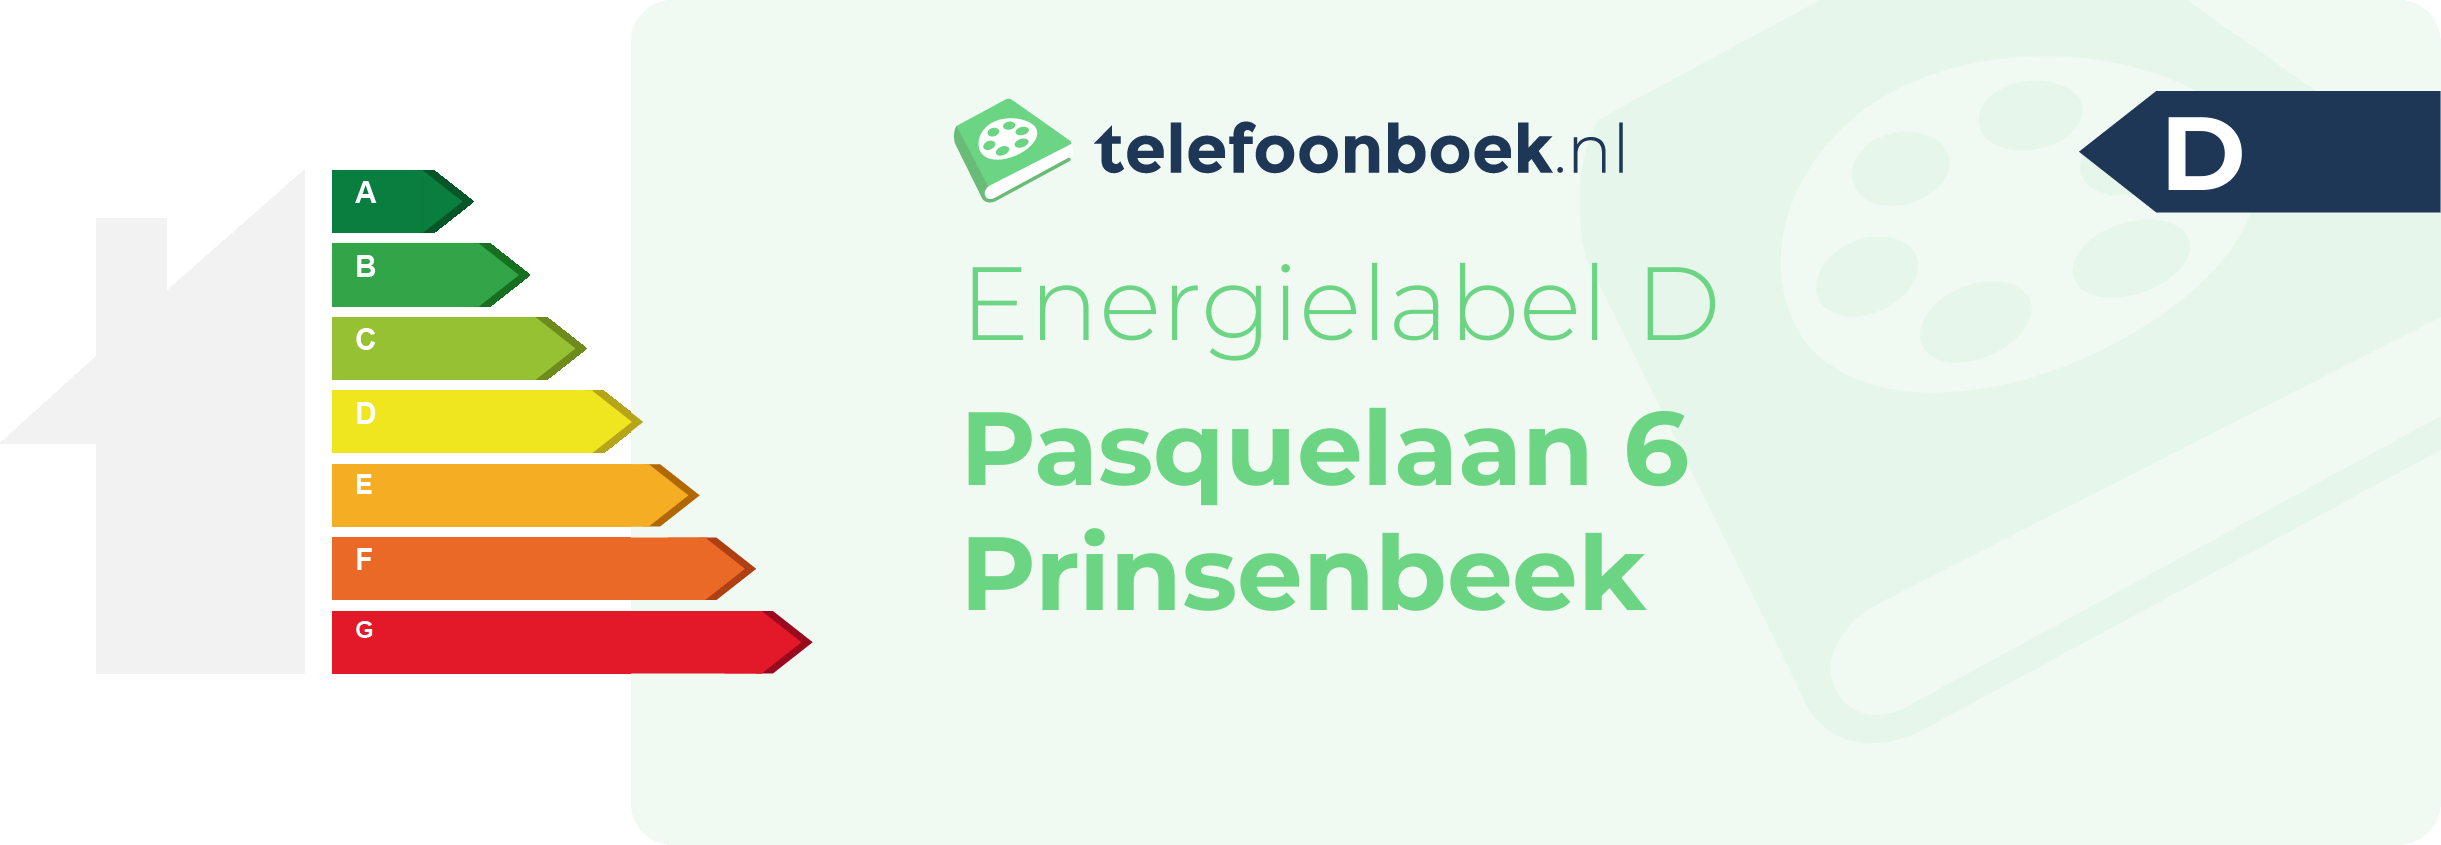 Energielabel Pasquelaan 6 Prinsenbeek